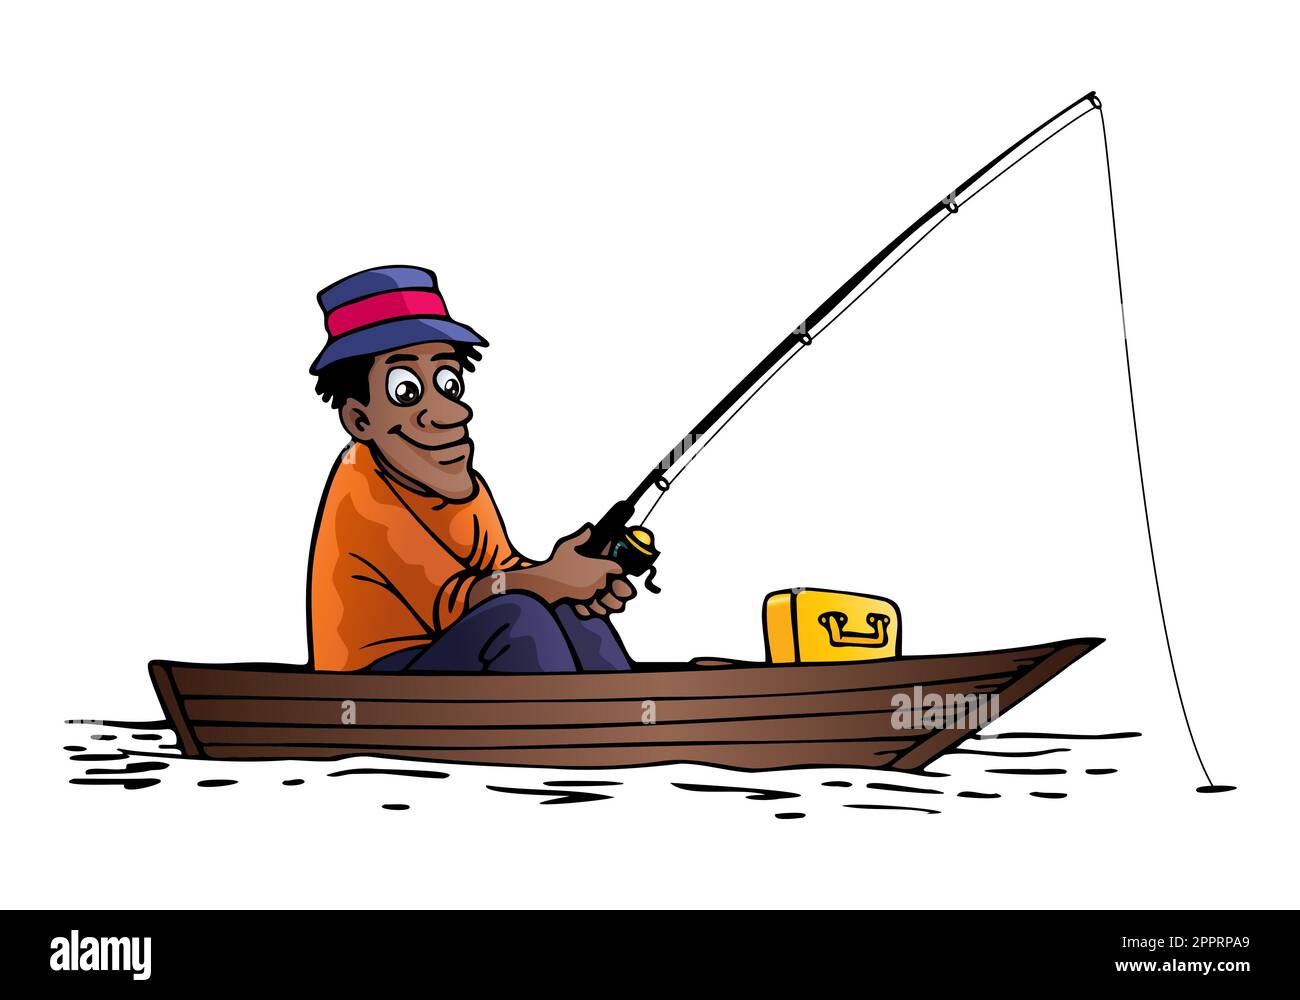 illustrazione di un cartoonman che pesca in barca su sfondo bianco isolato Foto Stock